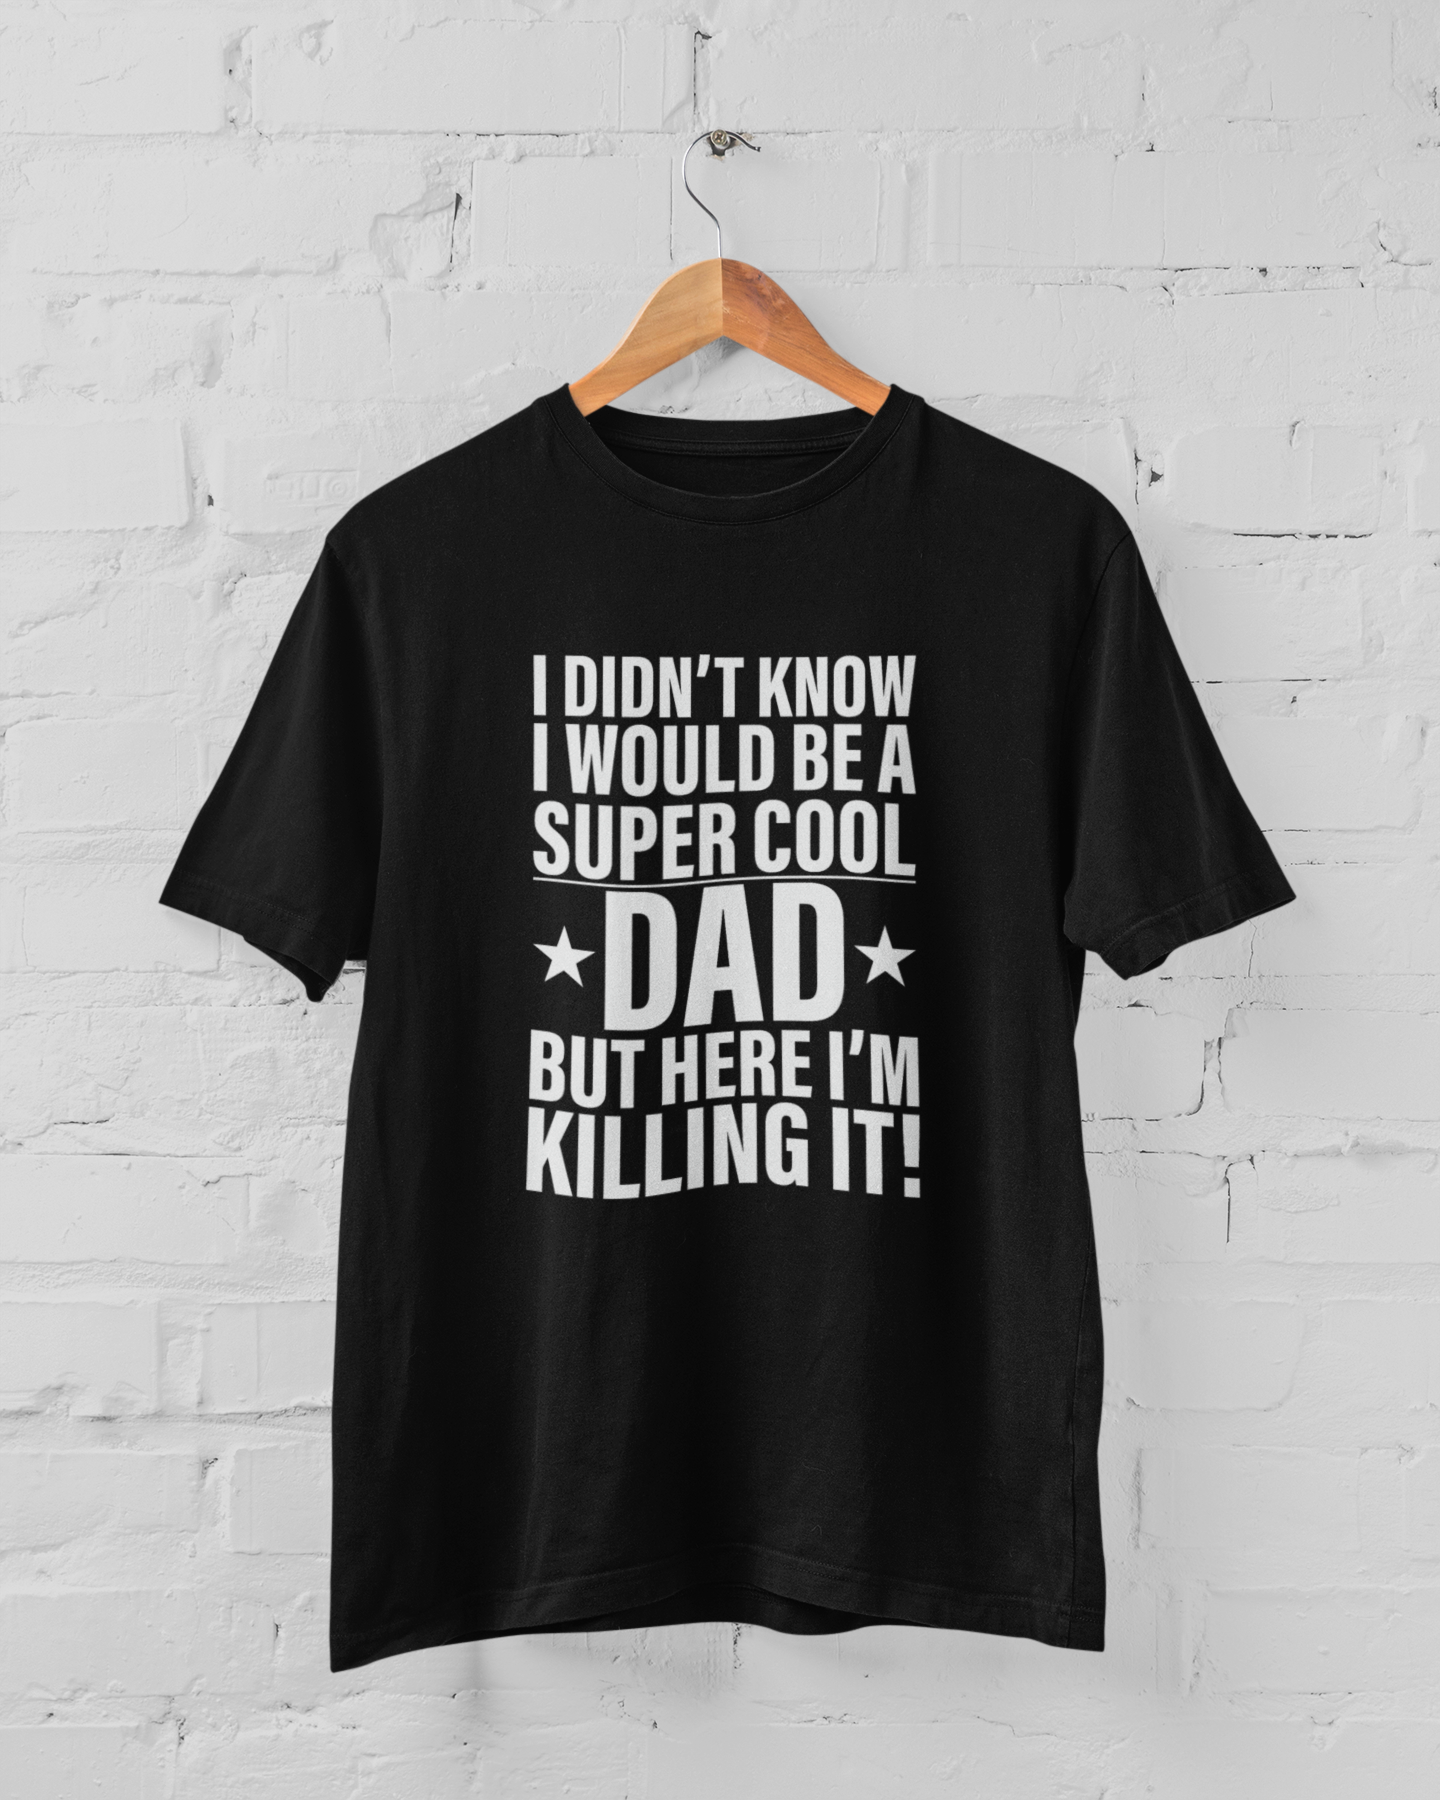 Super cool Dad T-shirt